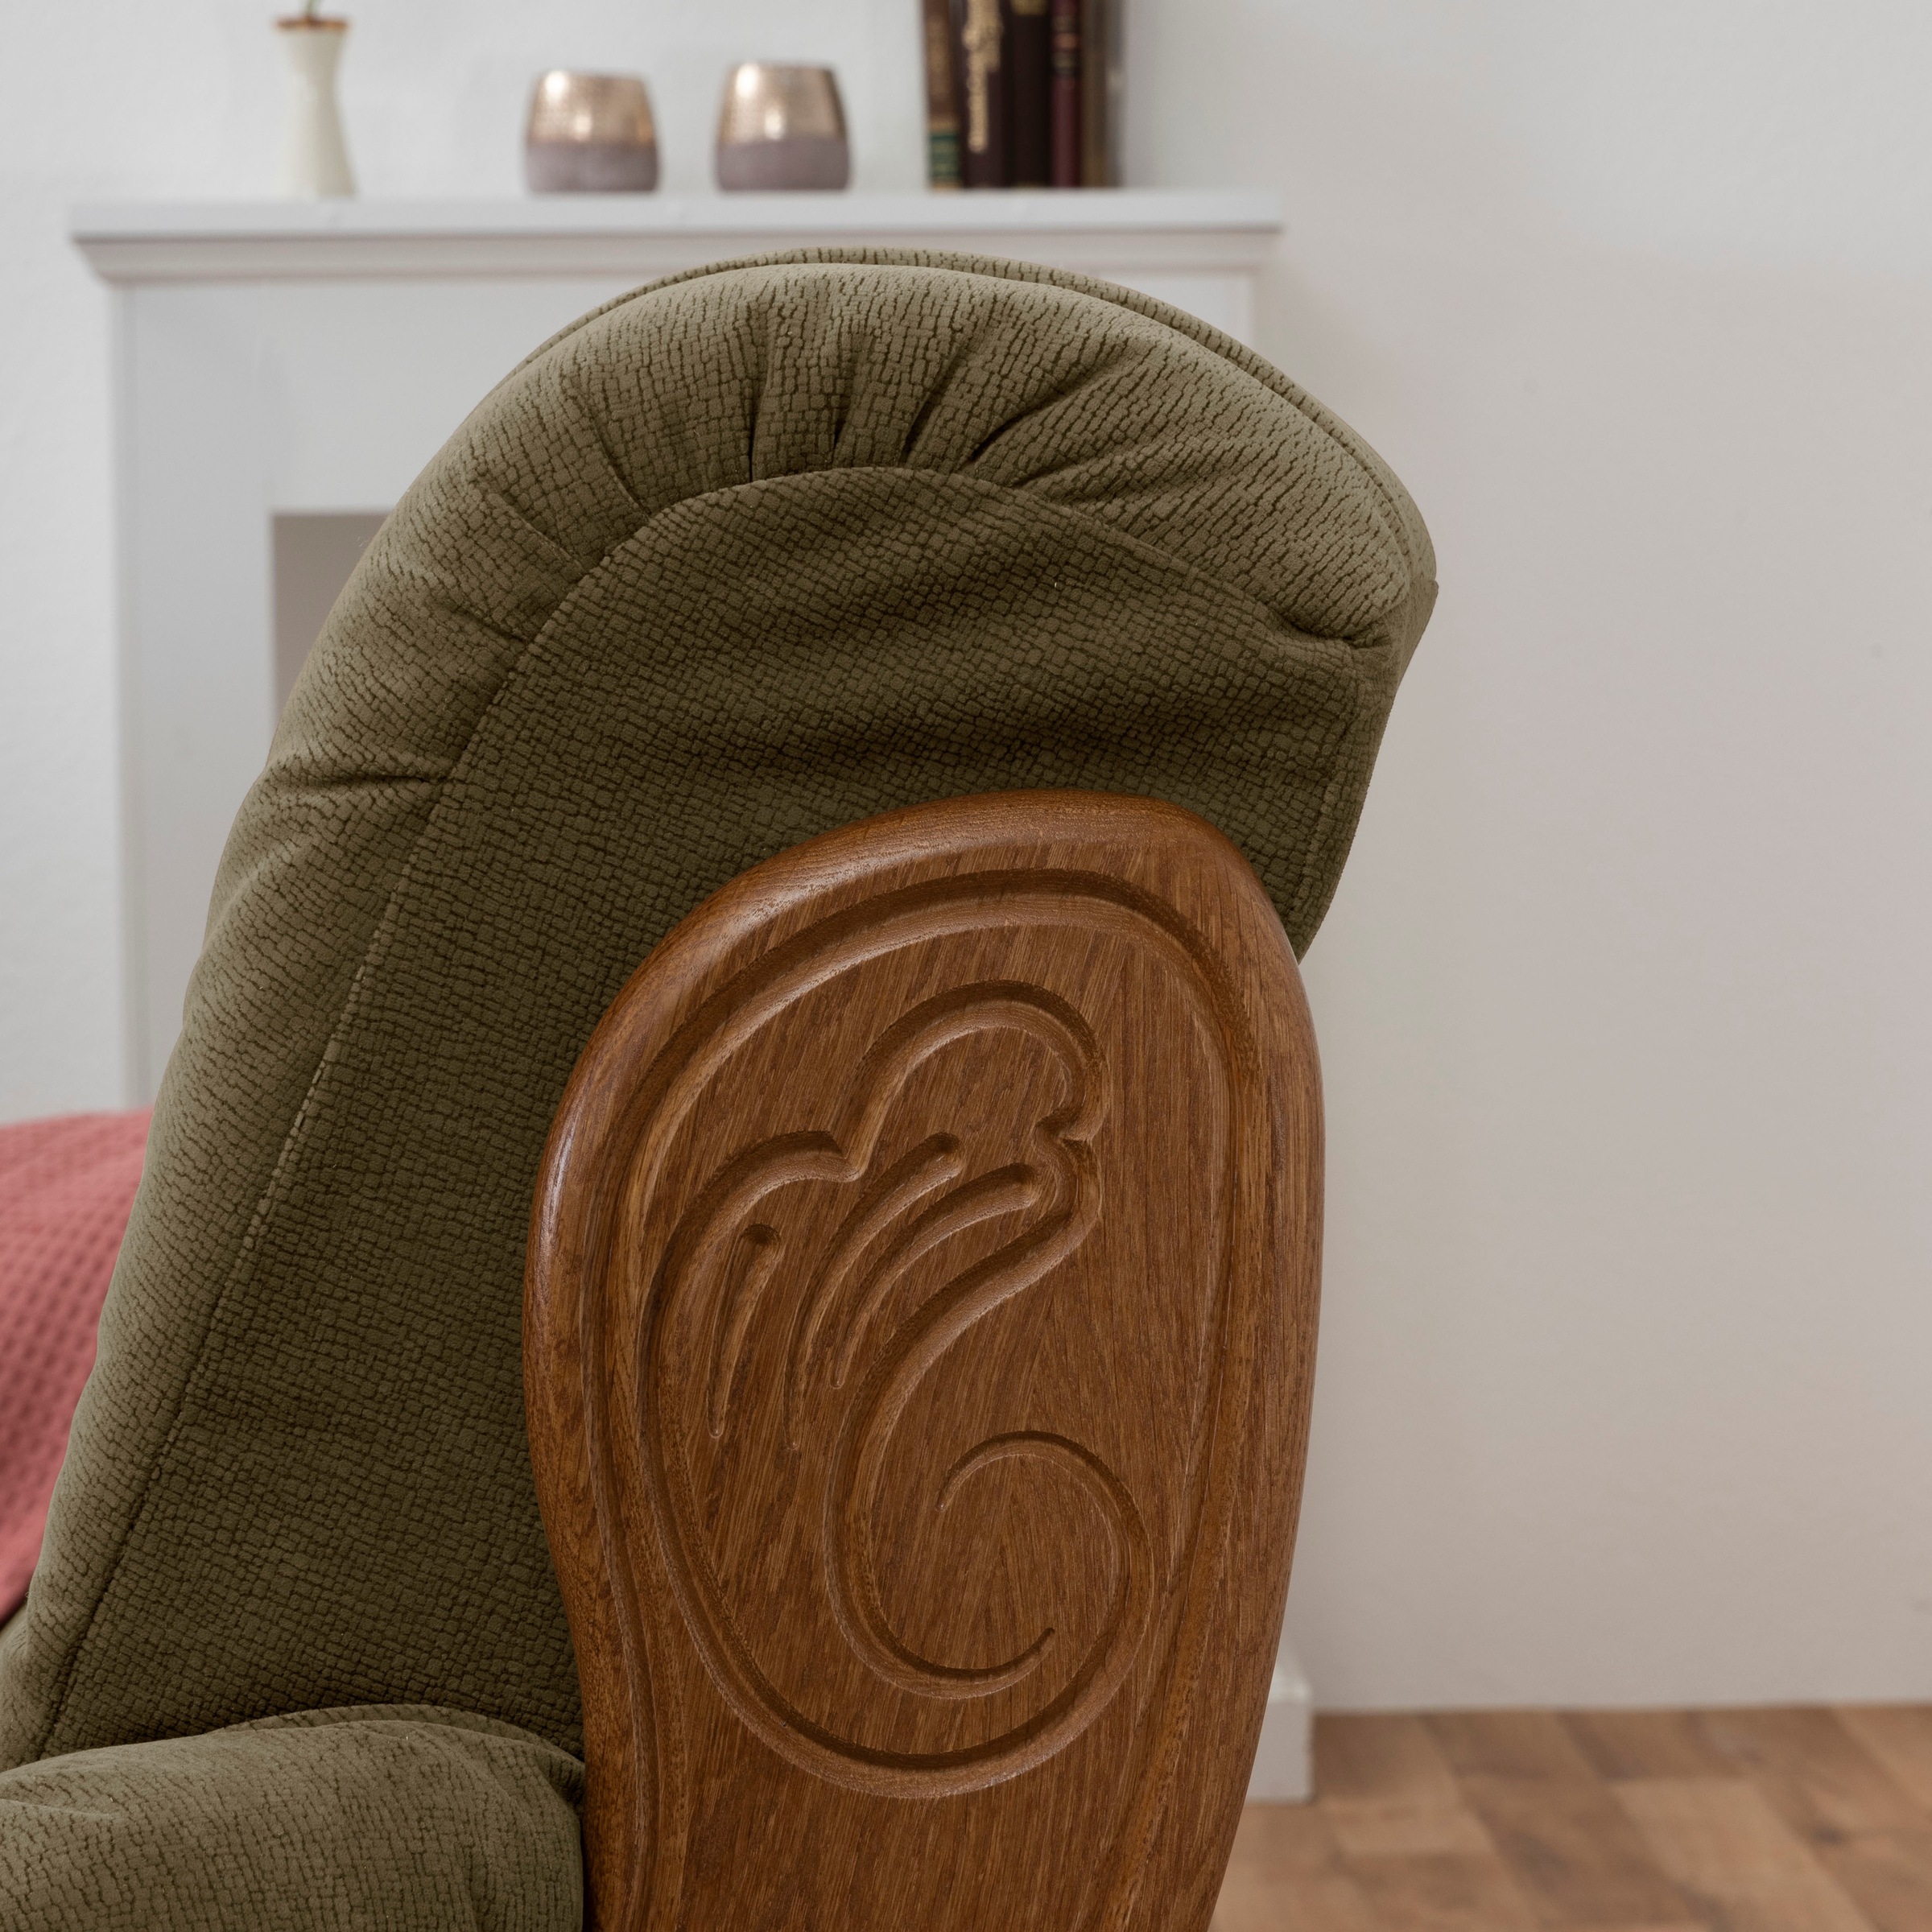 Max Winzer® 2-Sitzer »Texas«, mit dekorativem Holzgestell, Breite 147 cm